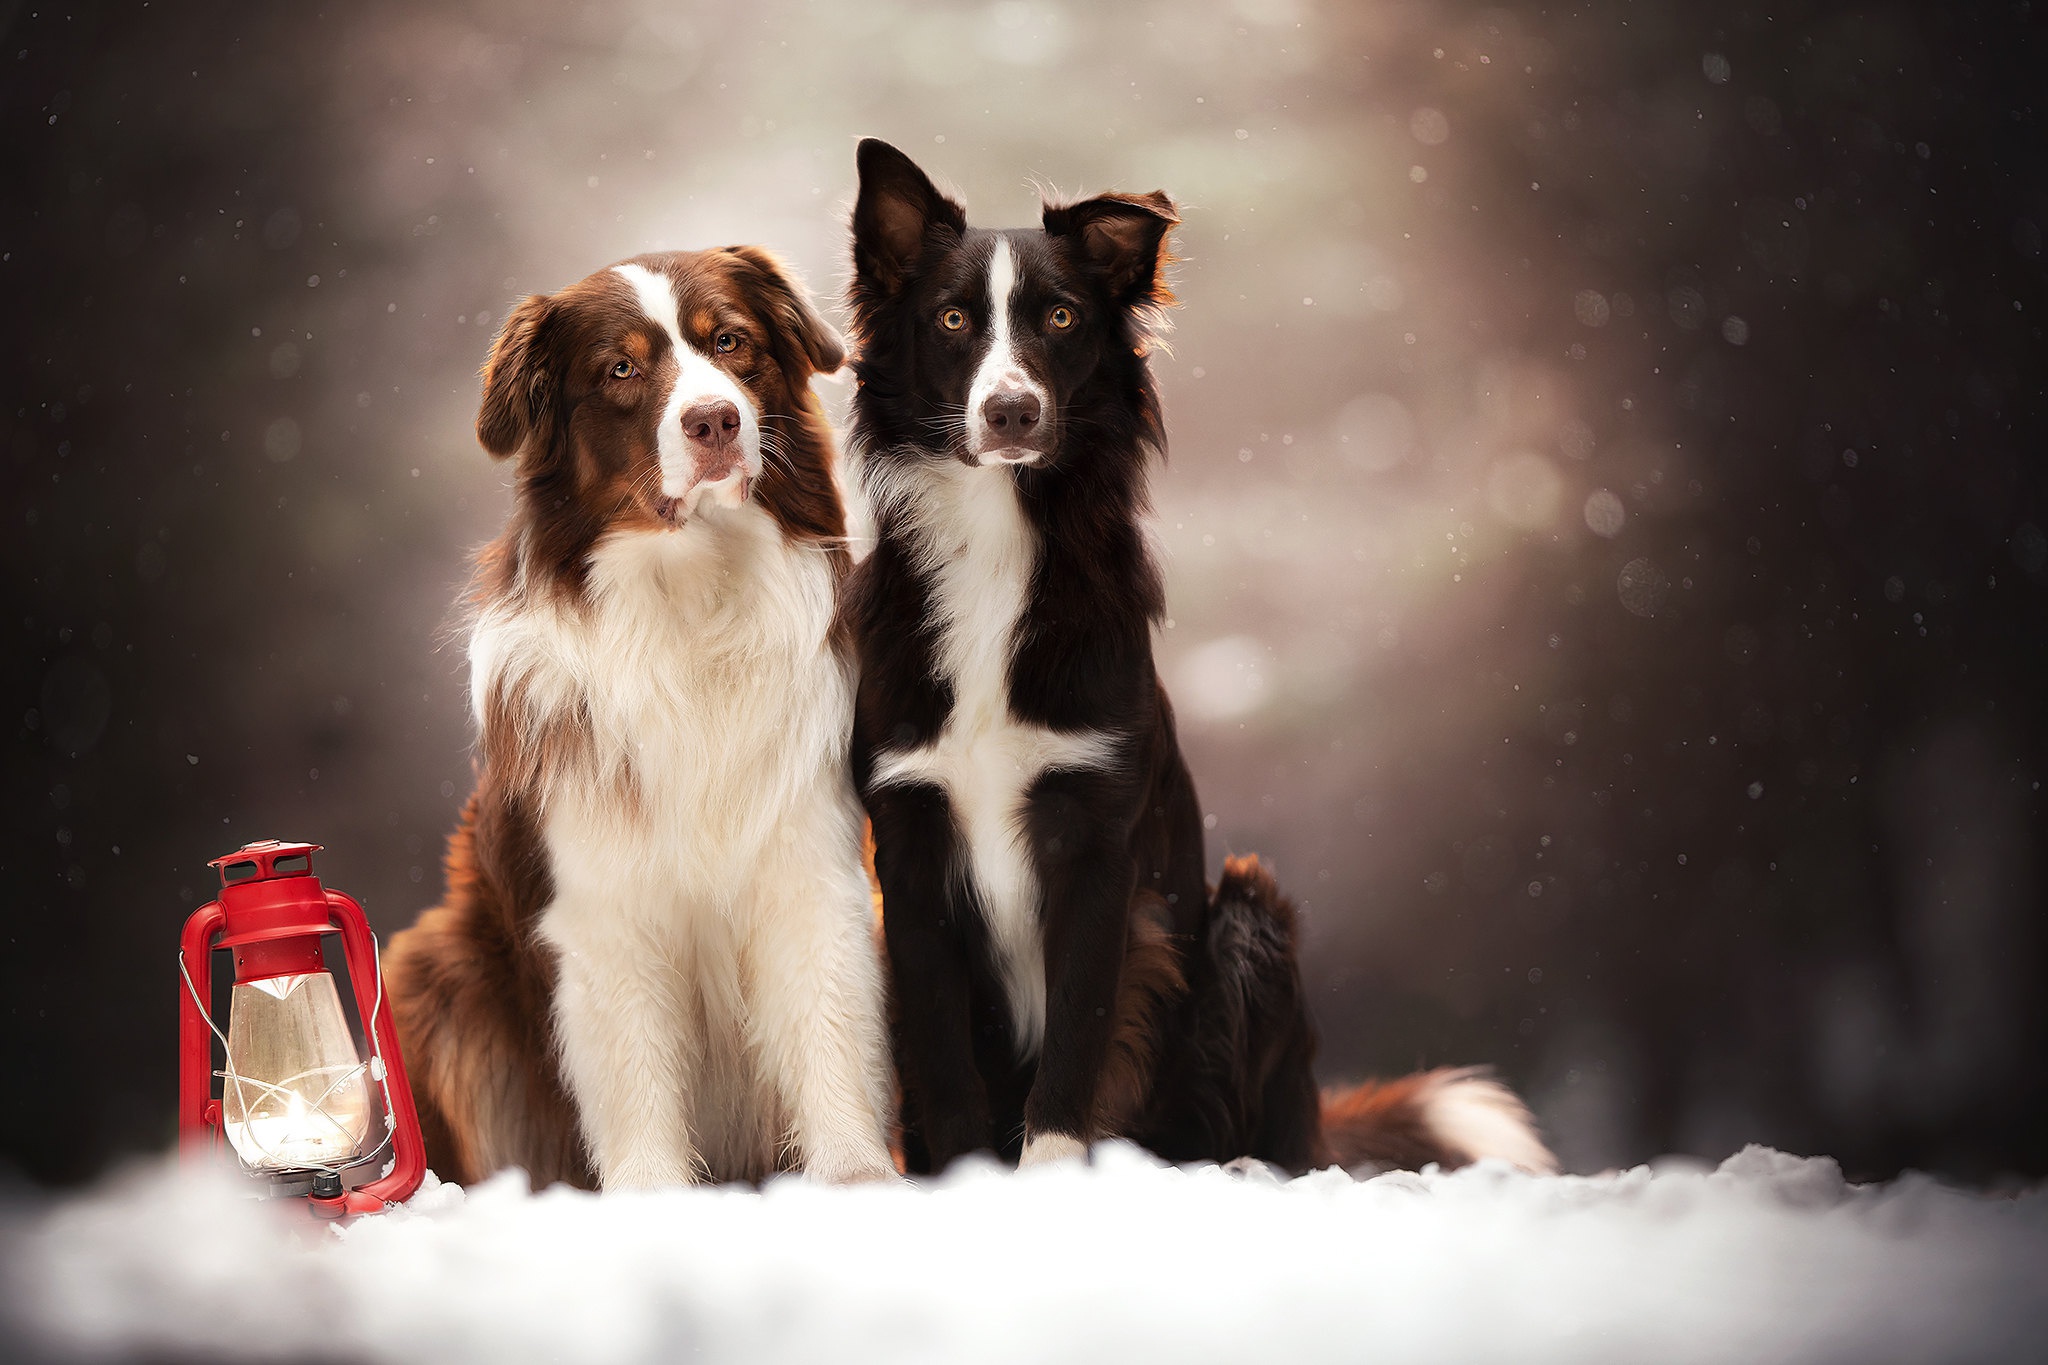 Скачать обои бесплатно Животные, Собаки, Снег, Собака, Фонарь, Бордер Колли картинка на рабочий стол ПК